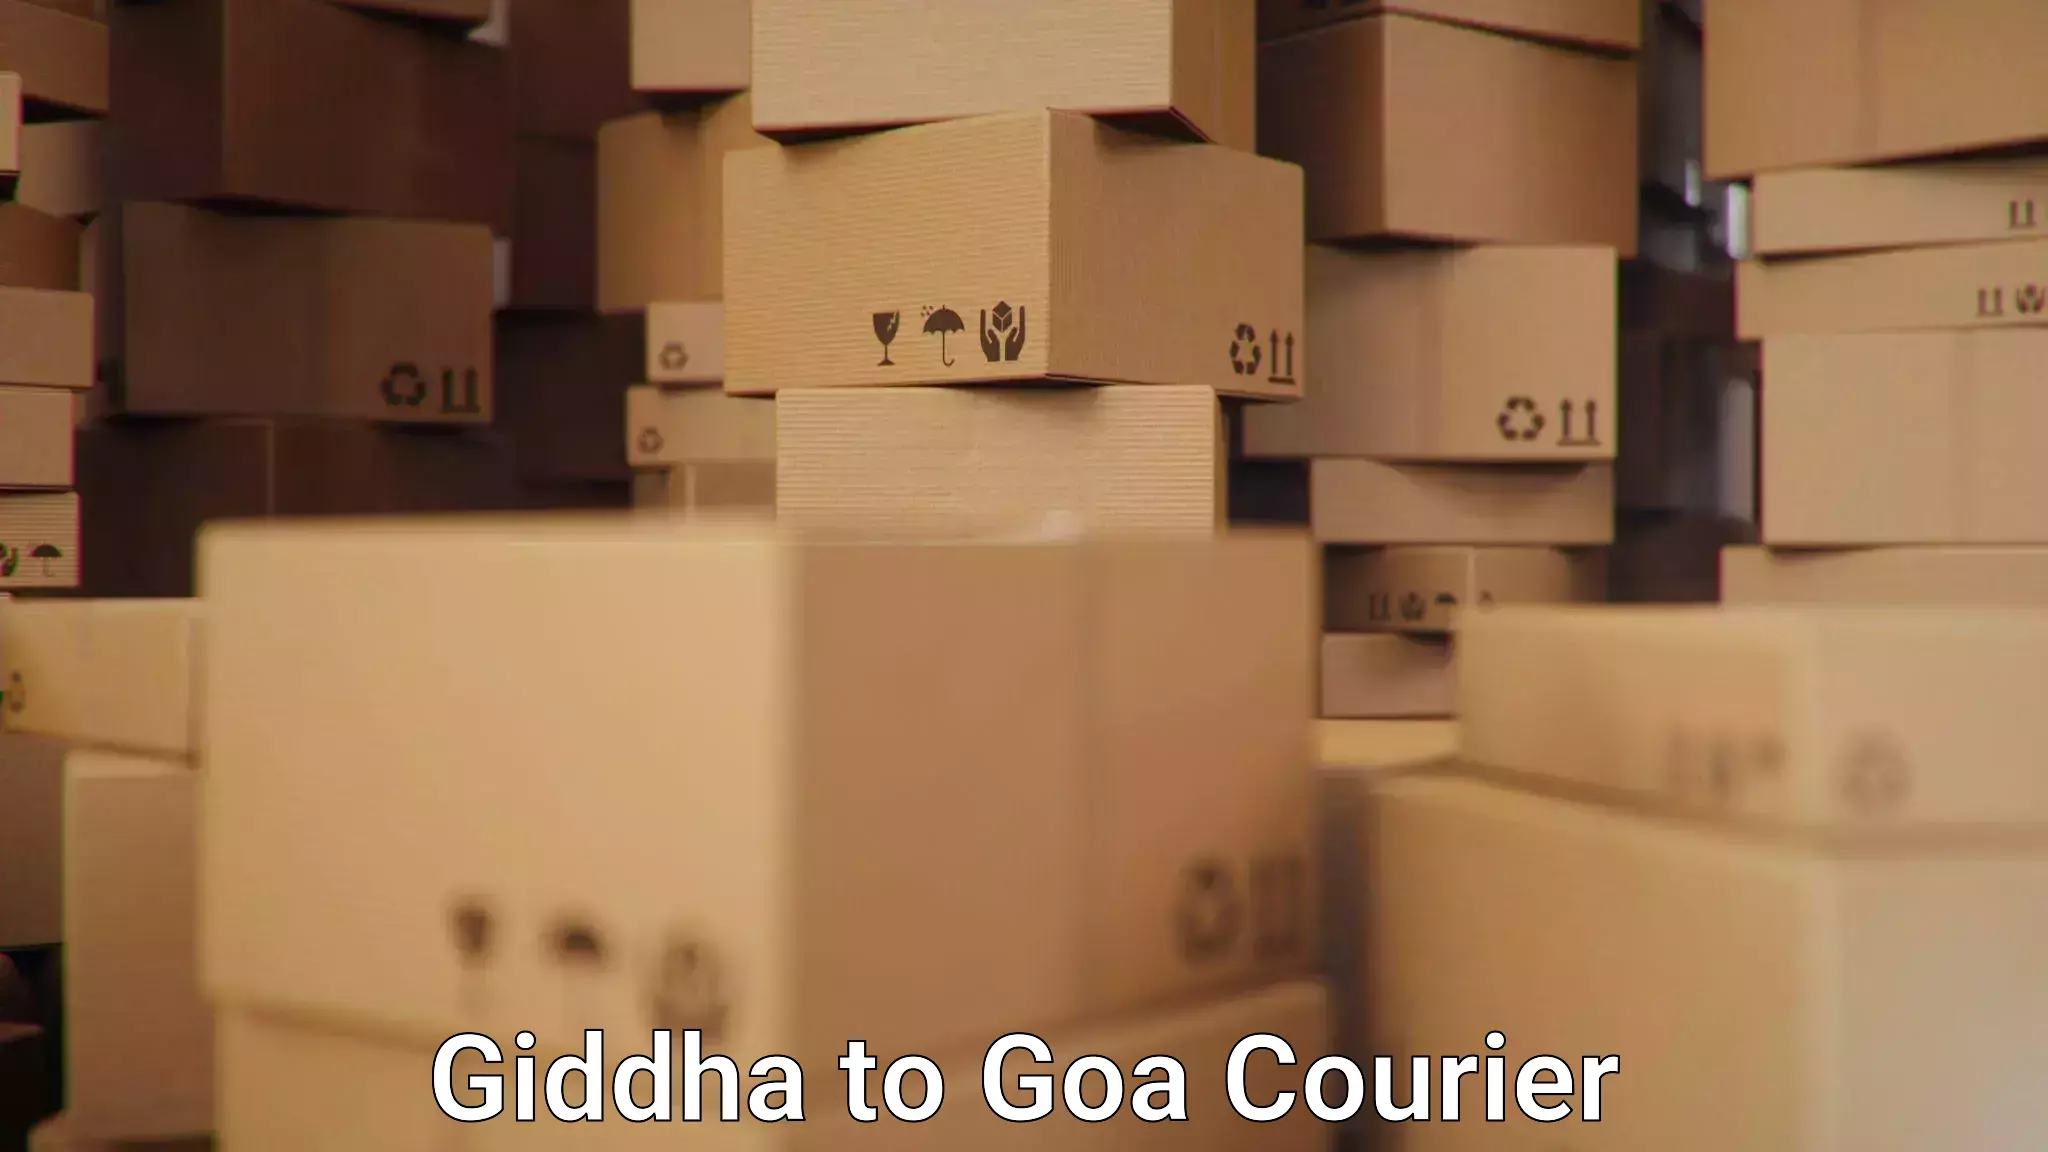 Flexible shipping options Giddha to Panjim